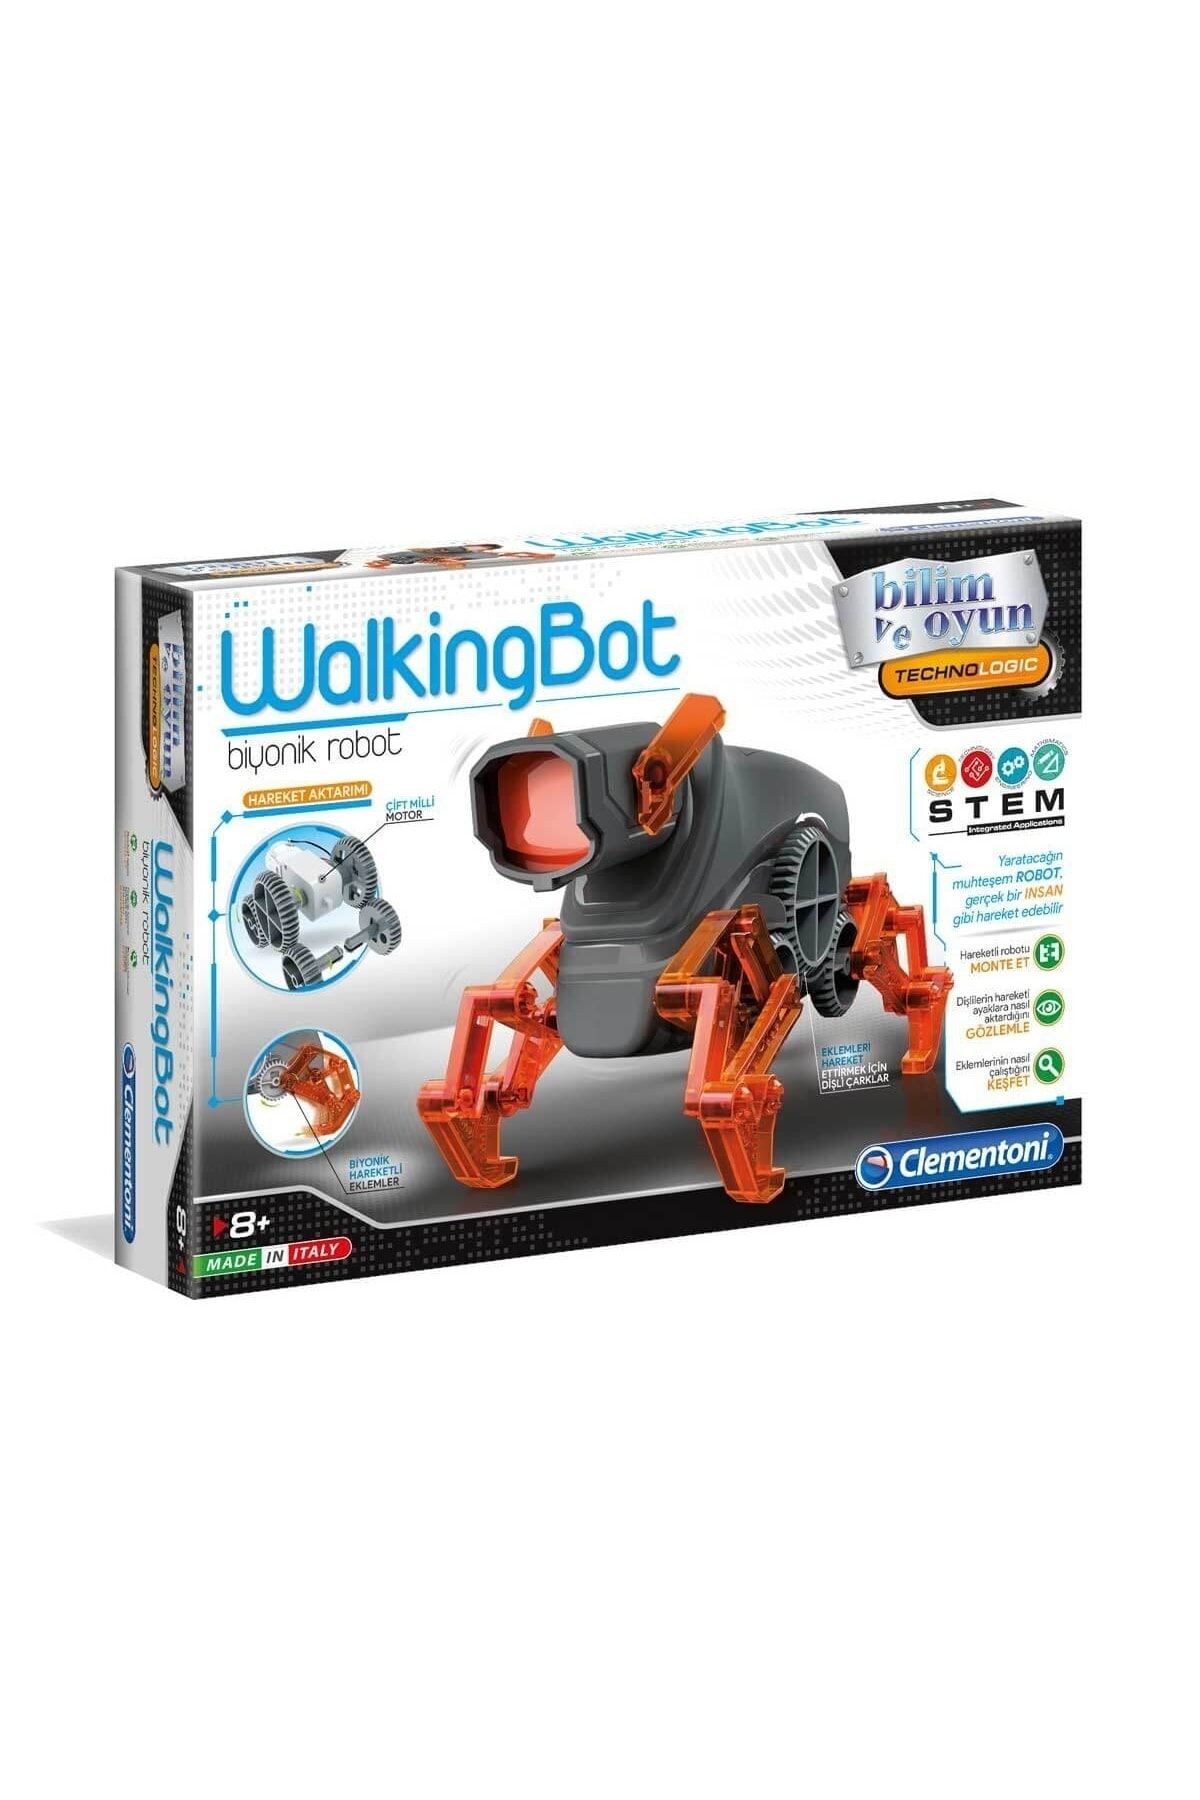 SAZE Hediye Oyuncak 64441 Walkingbot /robotik Laborutavarı /bilimveoyun +8 Yaş